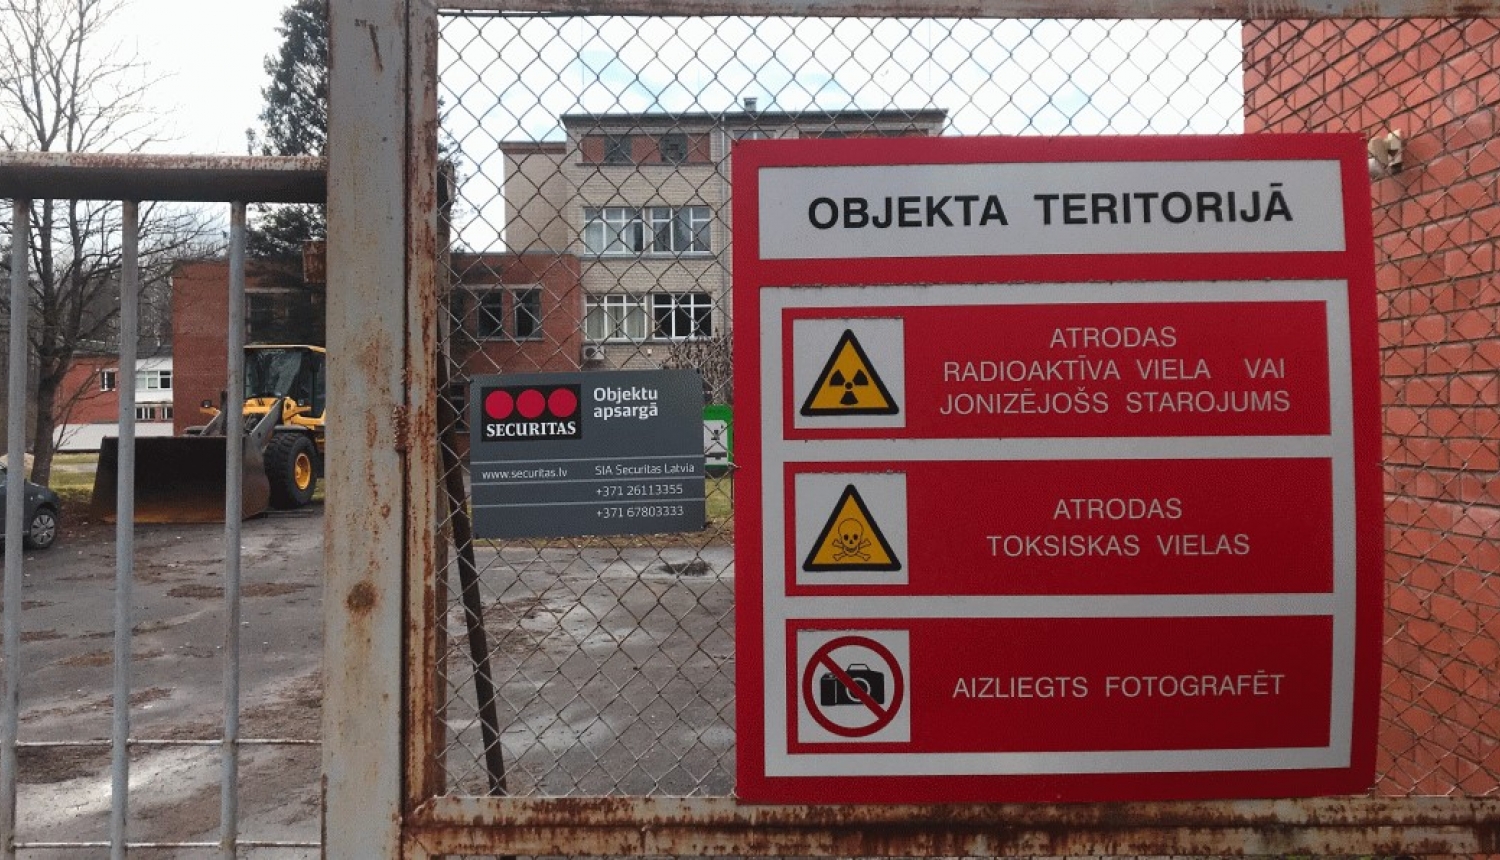 Salaspils kodolreaktora teritorija